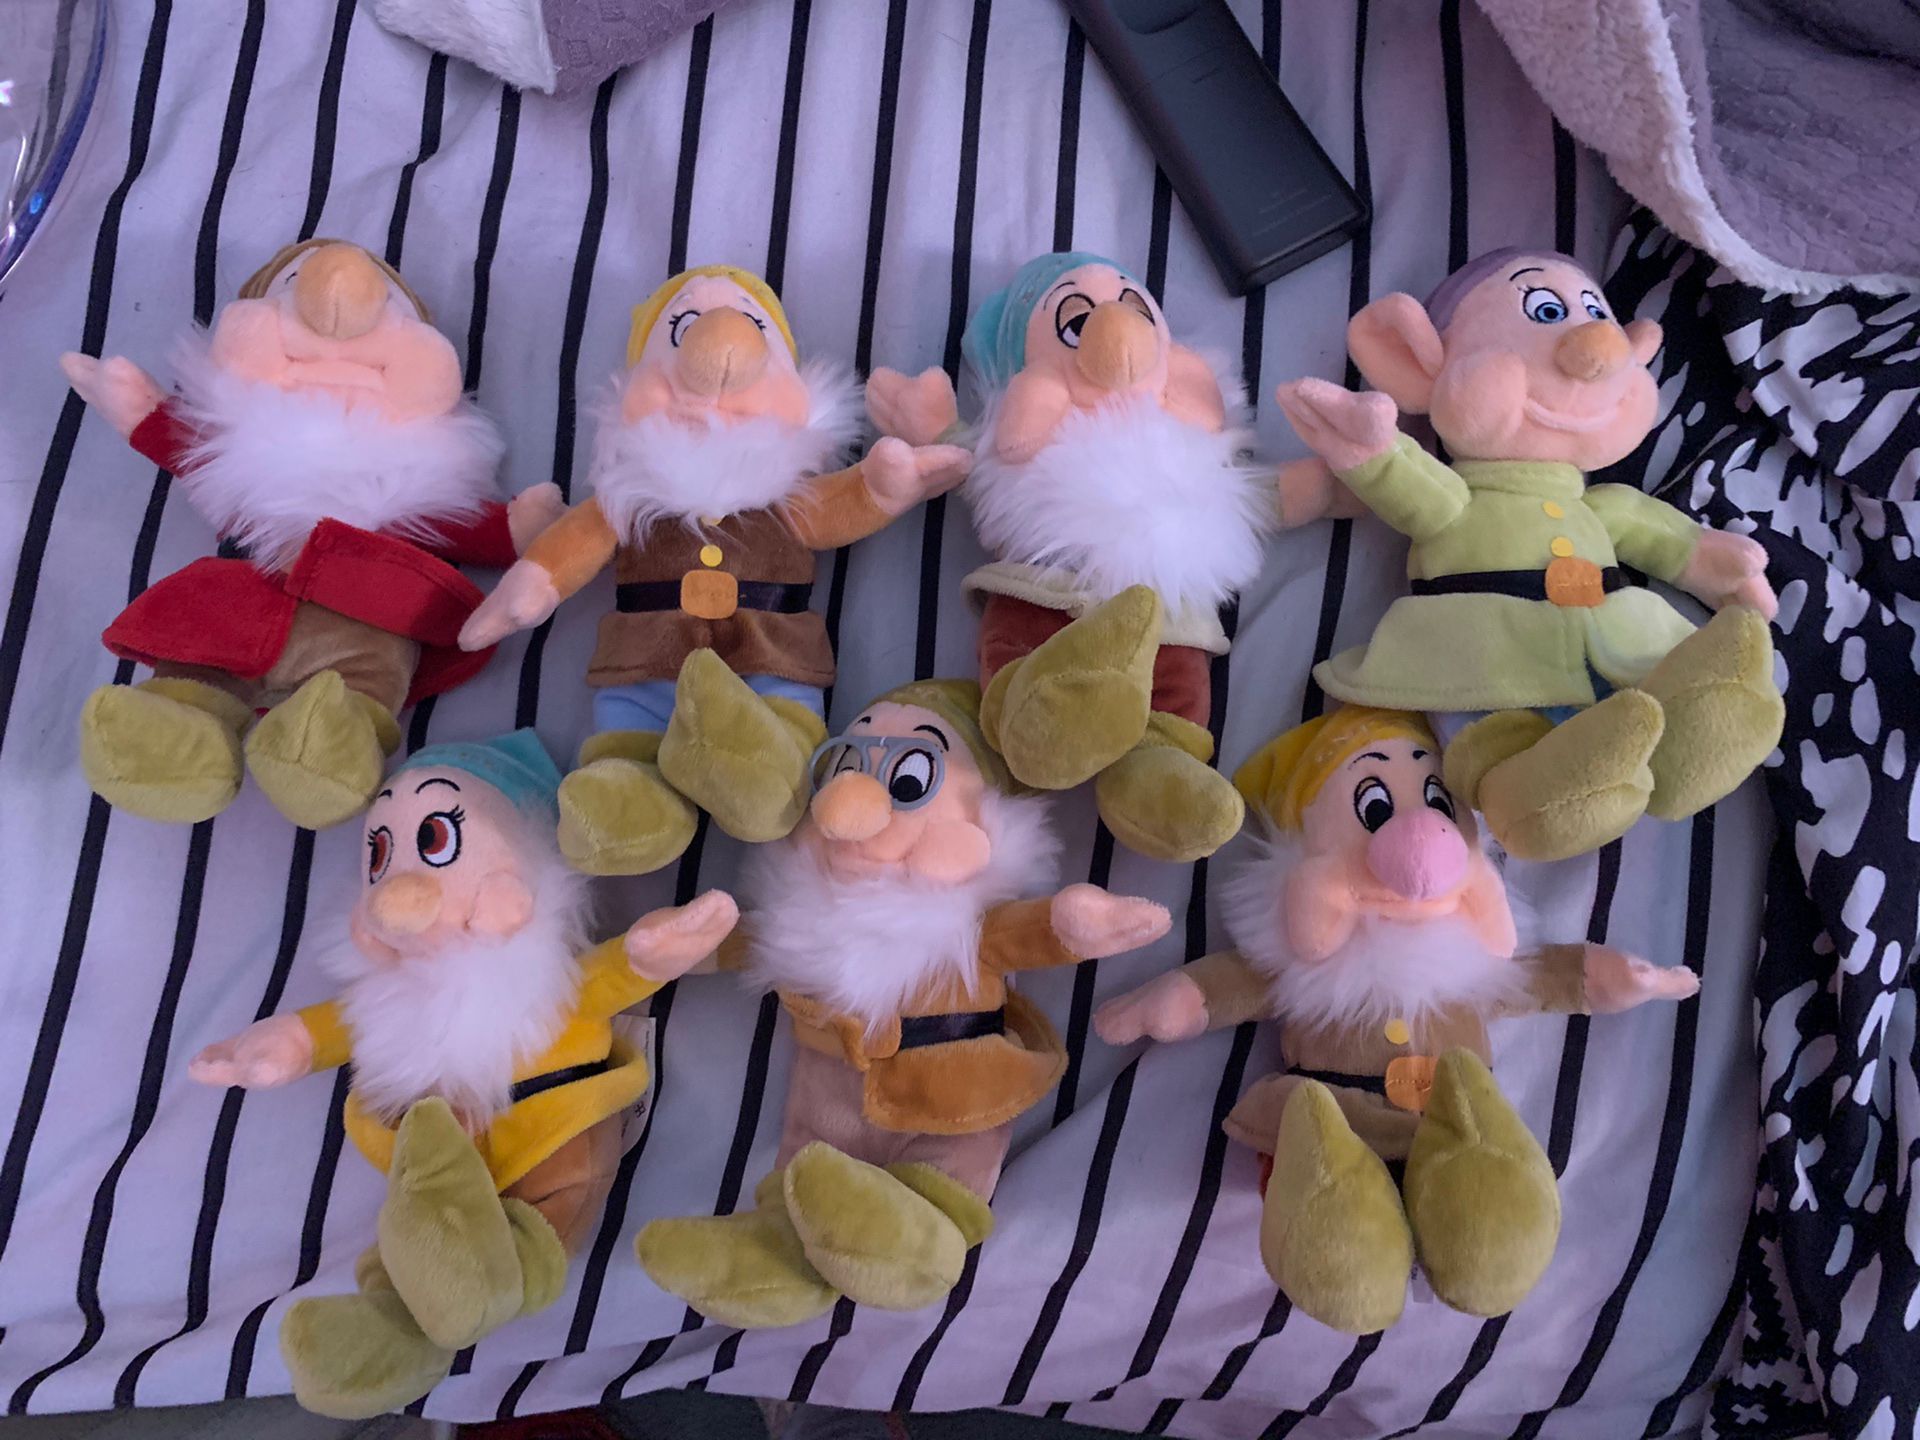 7 Dwarf Plush Toys